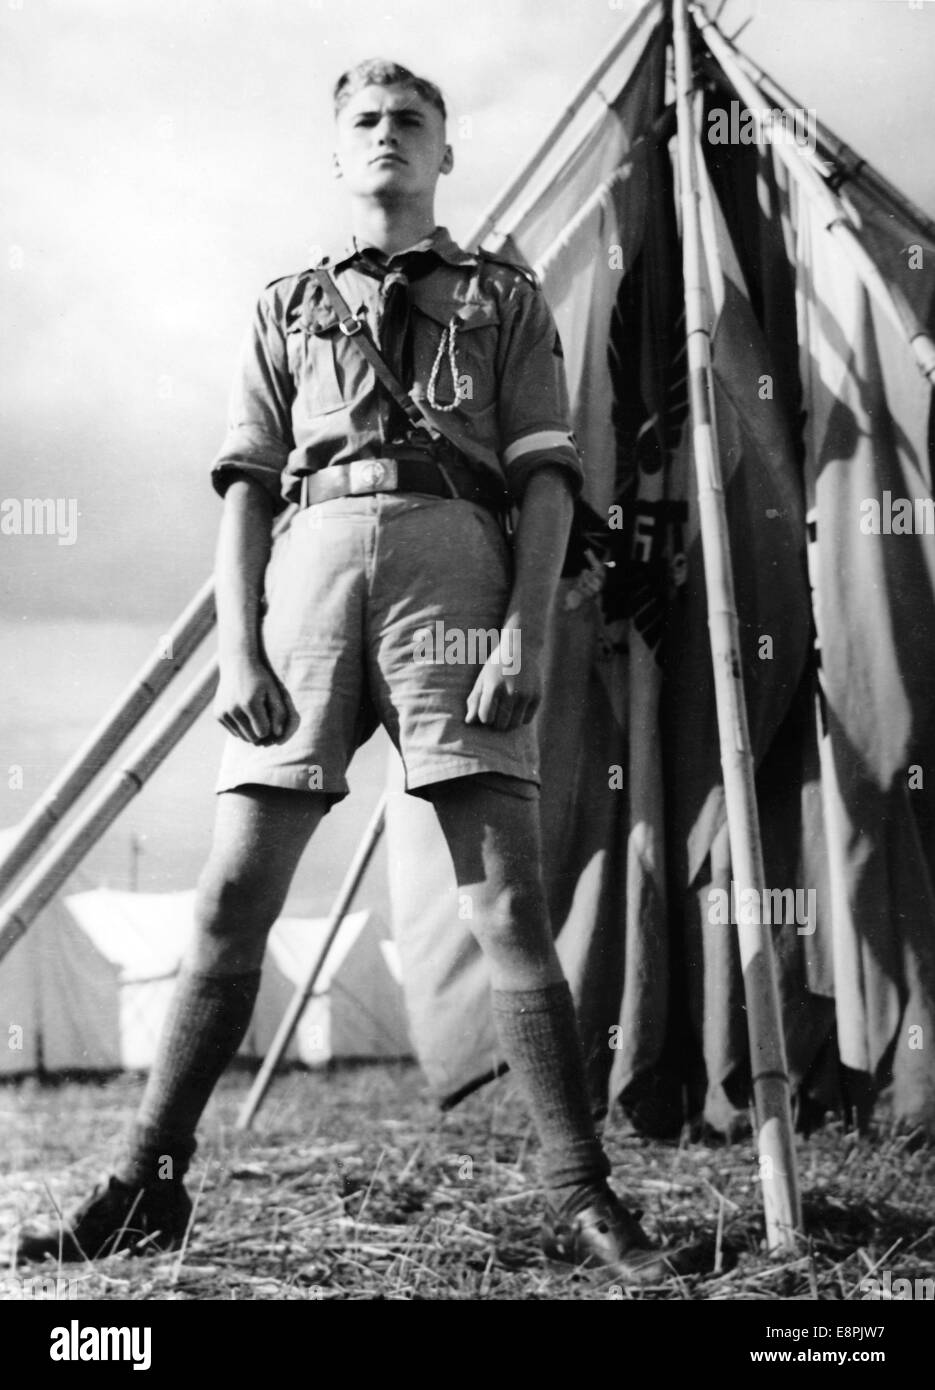 Rallye de Nuremberg 1937 à Nuremberg, Allemagne - Un membre de la Jeunesse Hitler garde un drapeau dans un camp à la périphérie de Nuremberg. Fotoarchiv für Zeitgeschichtee - PAS DE SERVICE DE FIL – Banque D'Images